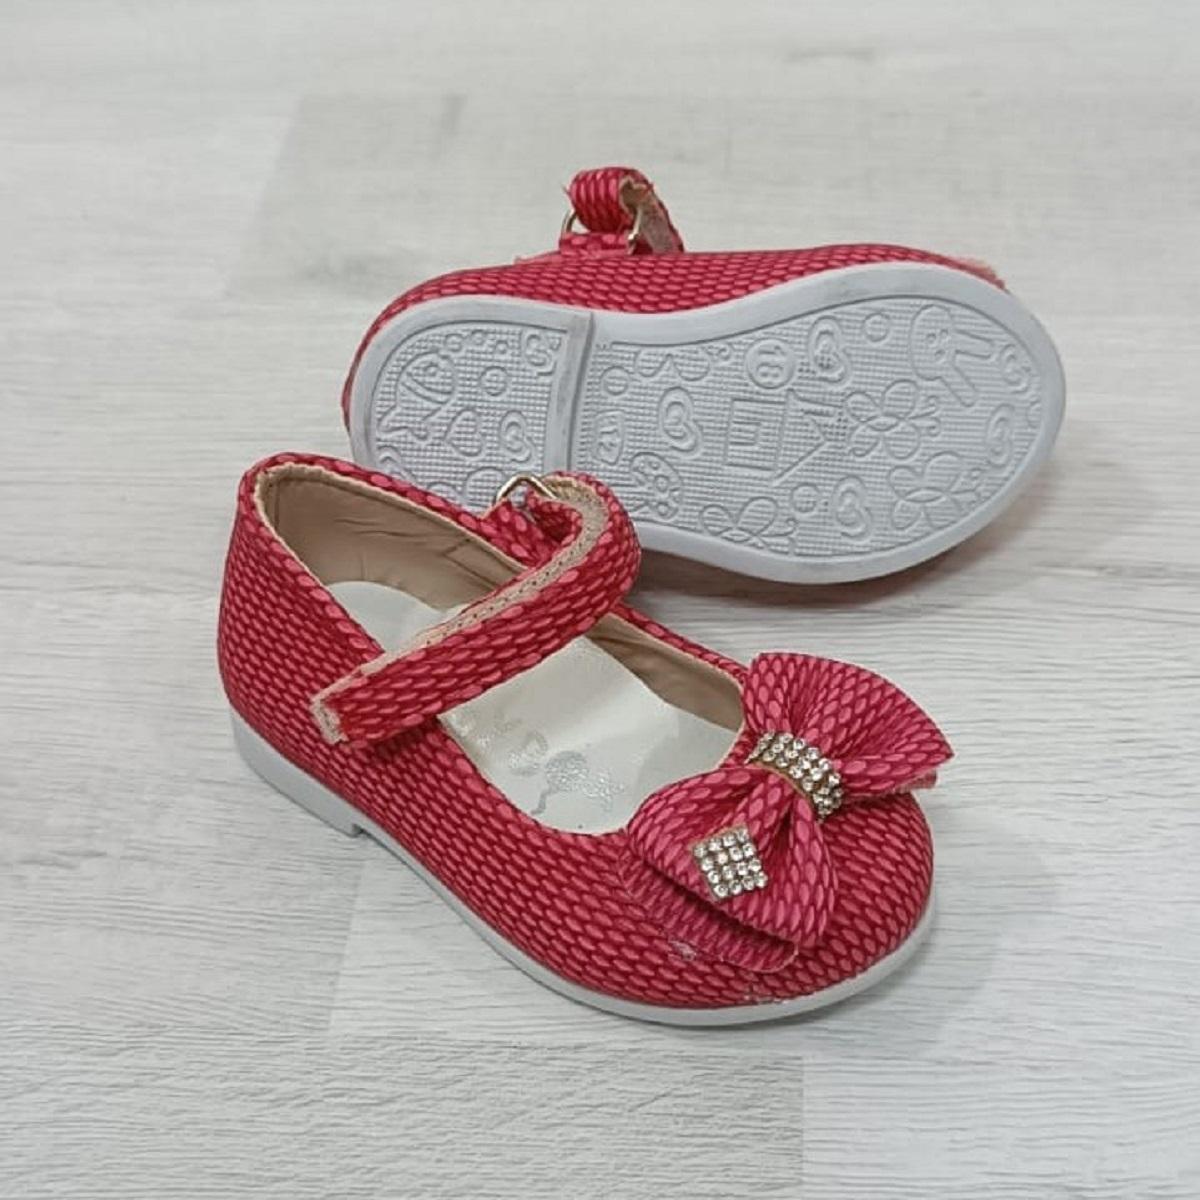 Fiyra 8012 Handmade Orthopedic Baby Girl Babet Shoes With Fuchsia Velcro